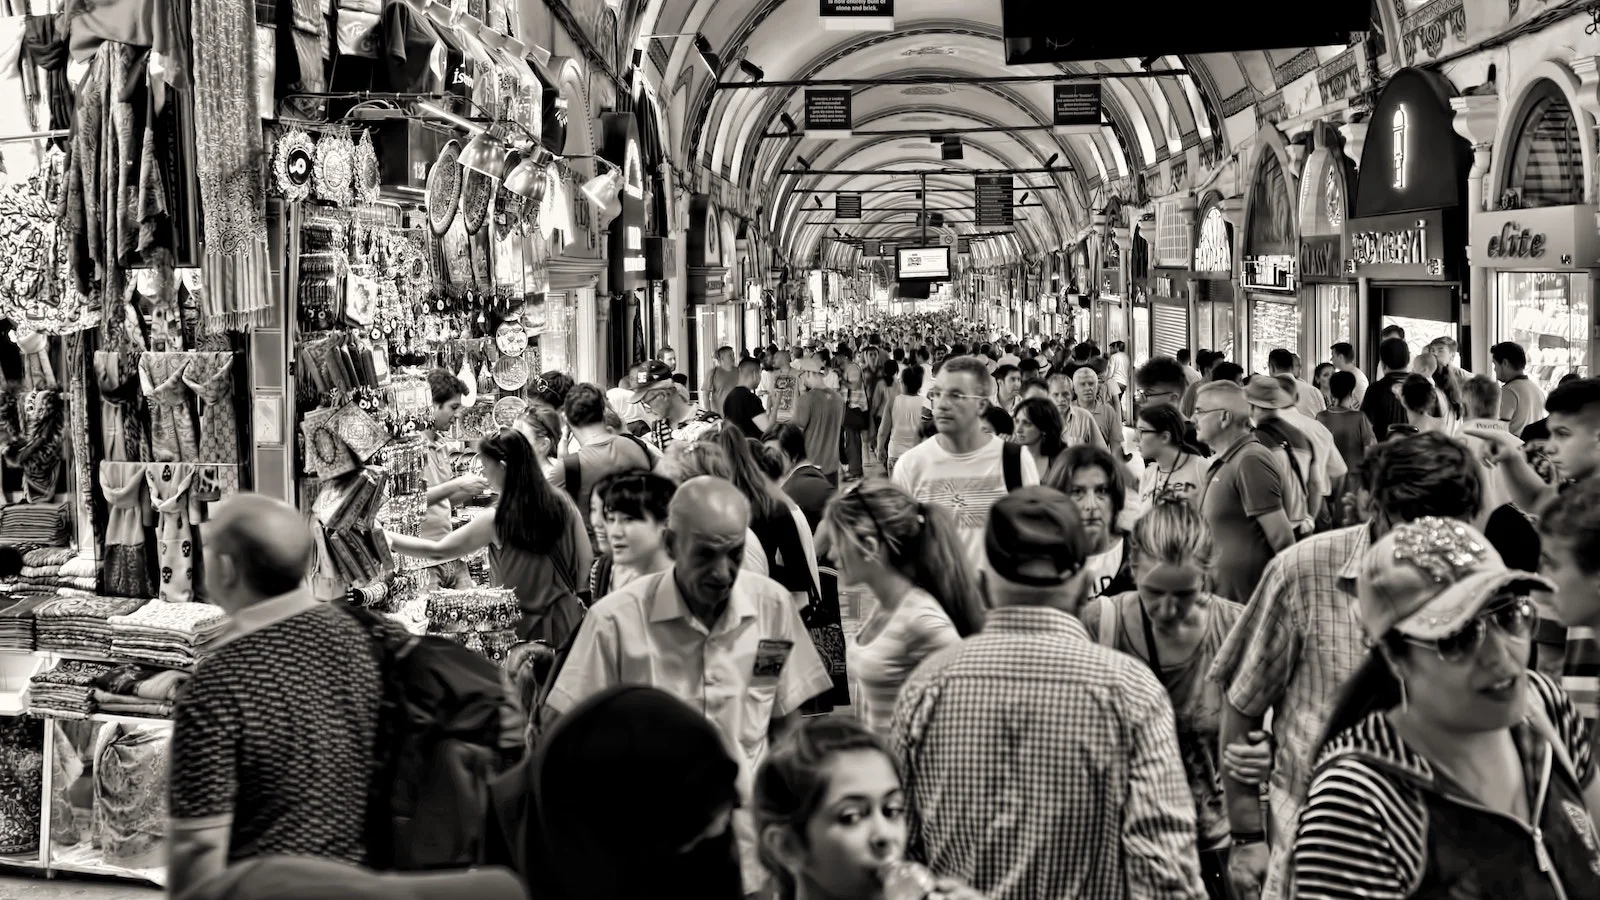 Busy market scene in greyscale